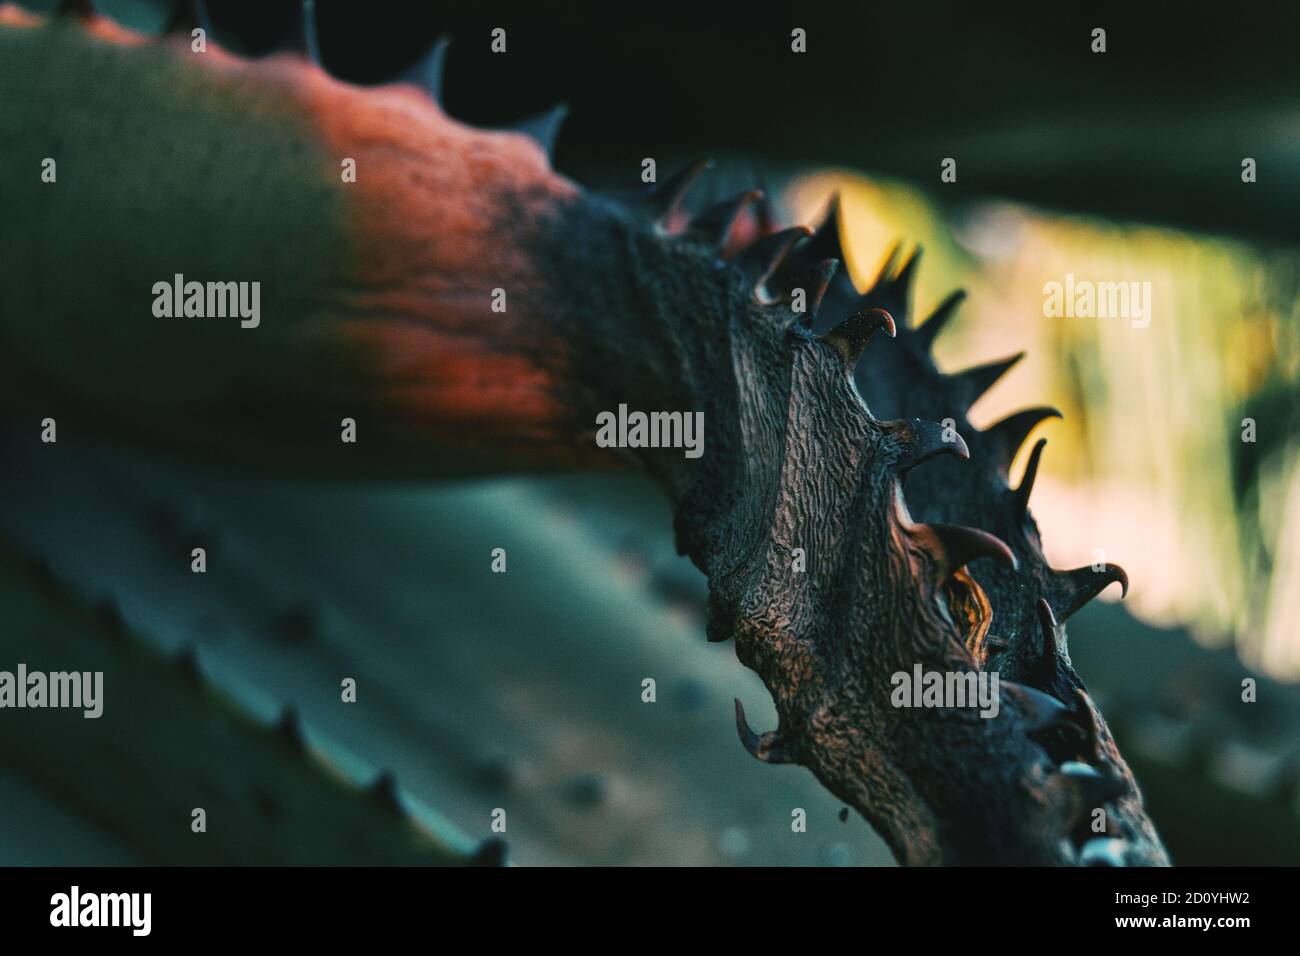 Dettaglio di un semi-appassiti dentato pianta con texture rugosa Foto Stock